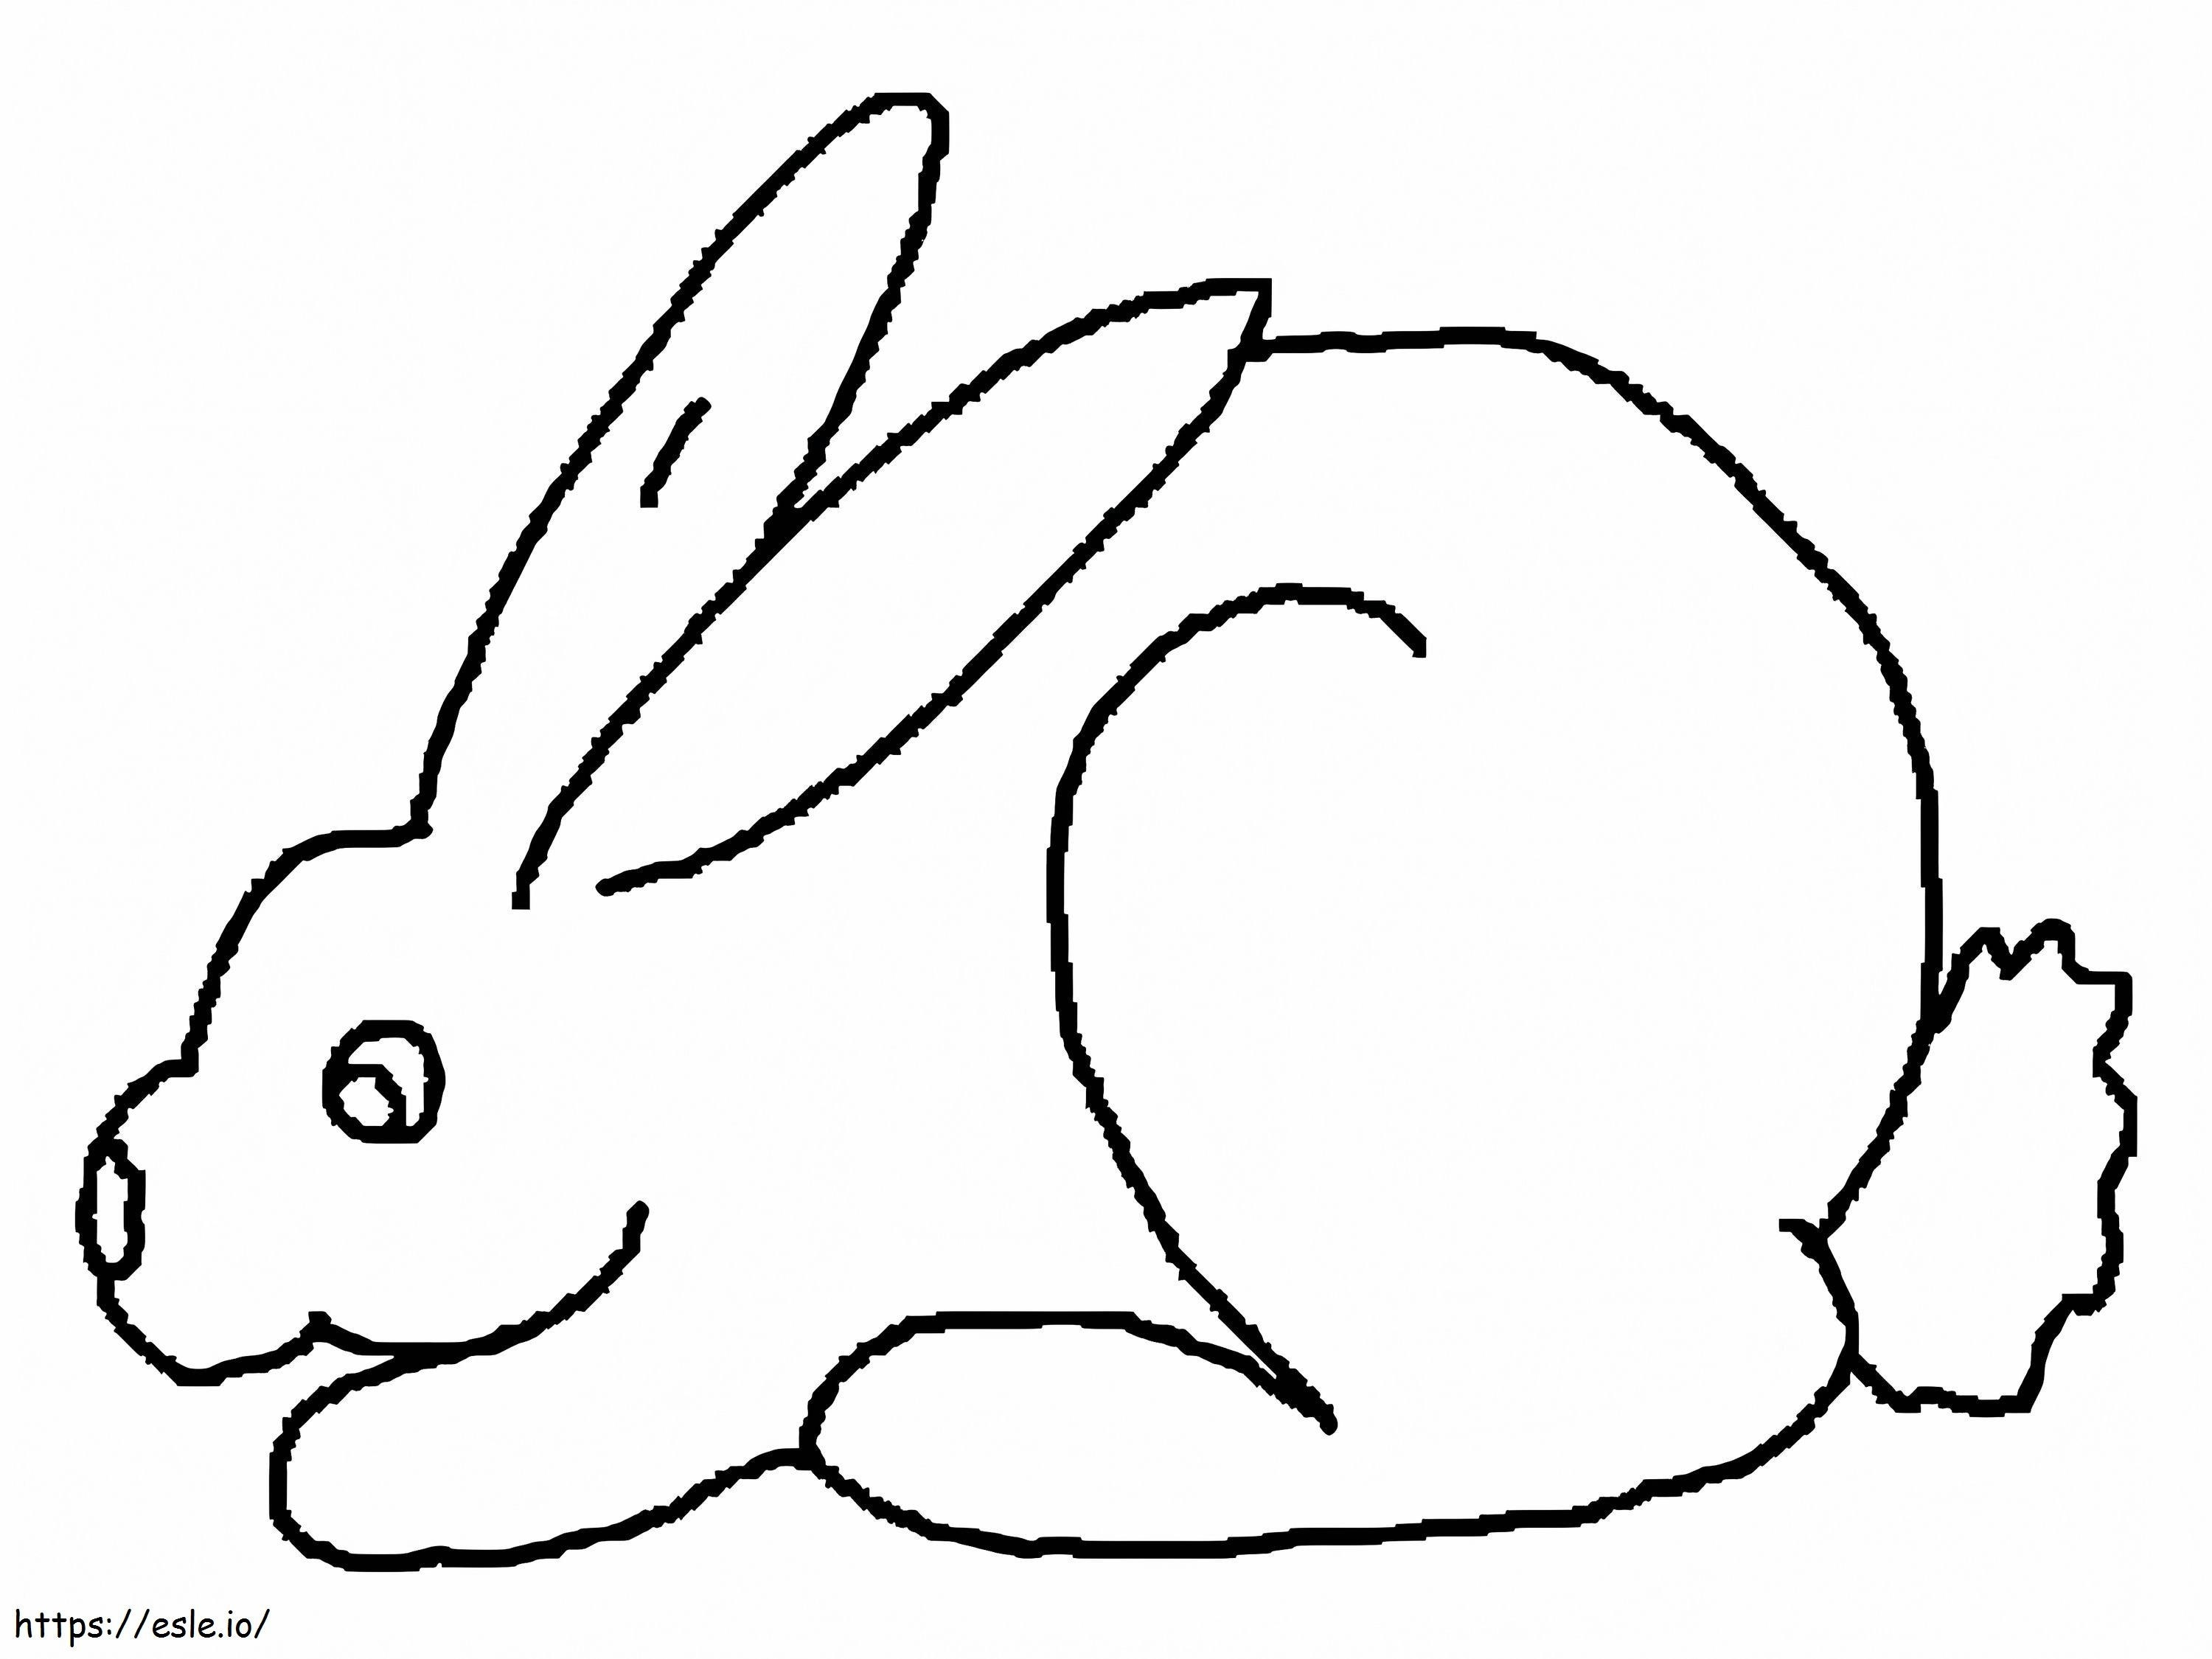 Ein einfaches Kaninchen ausmalbilder